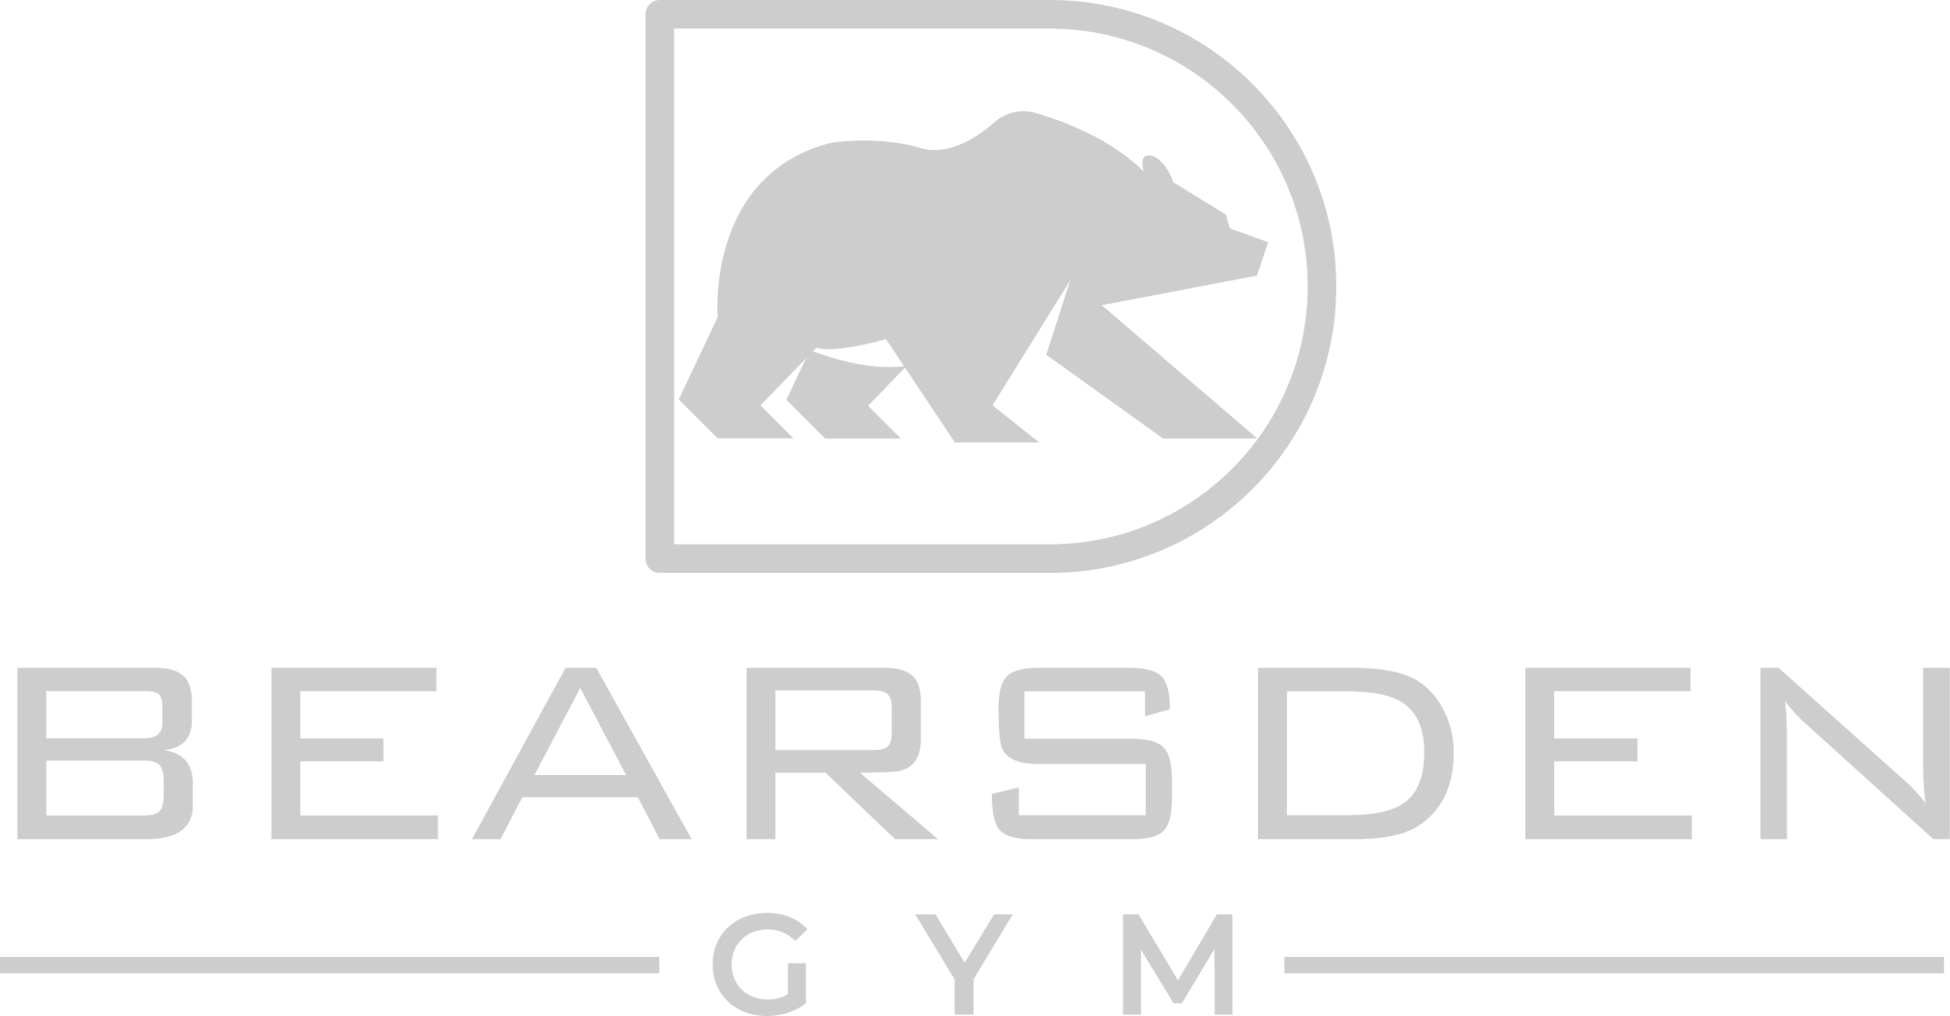 Bears Den Gym